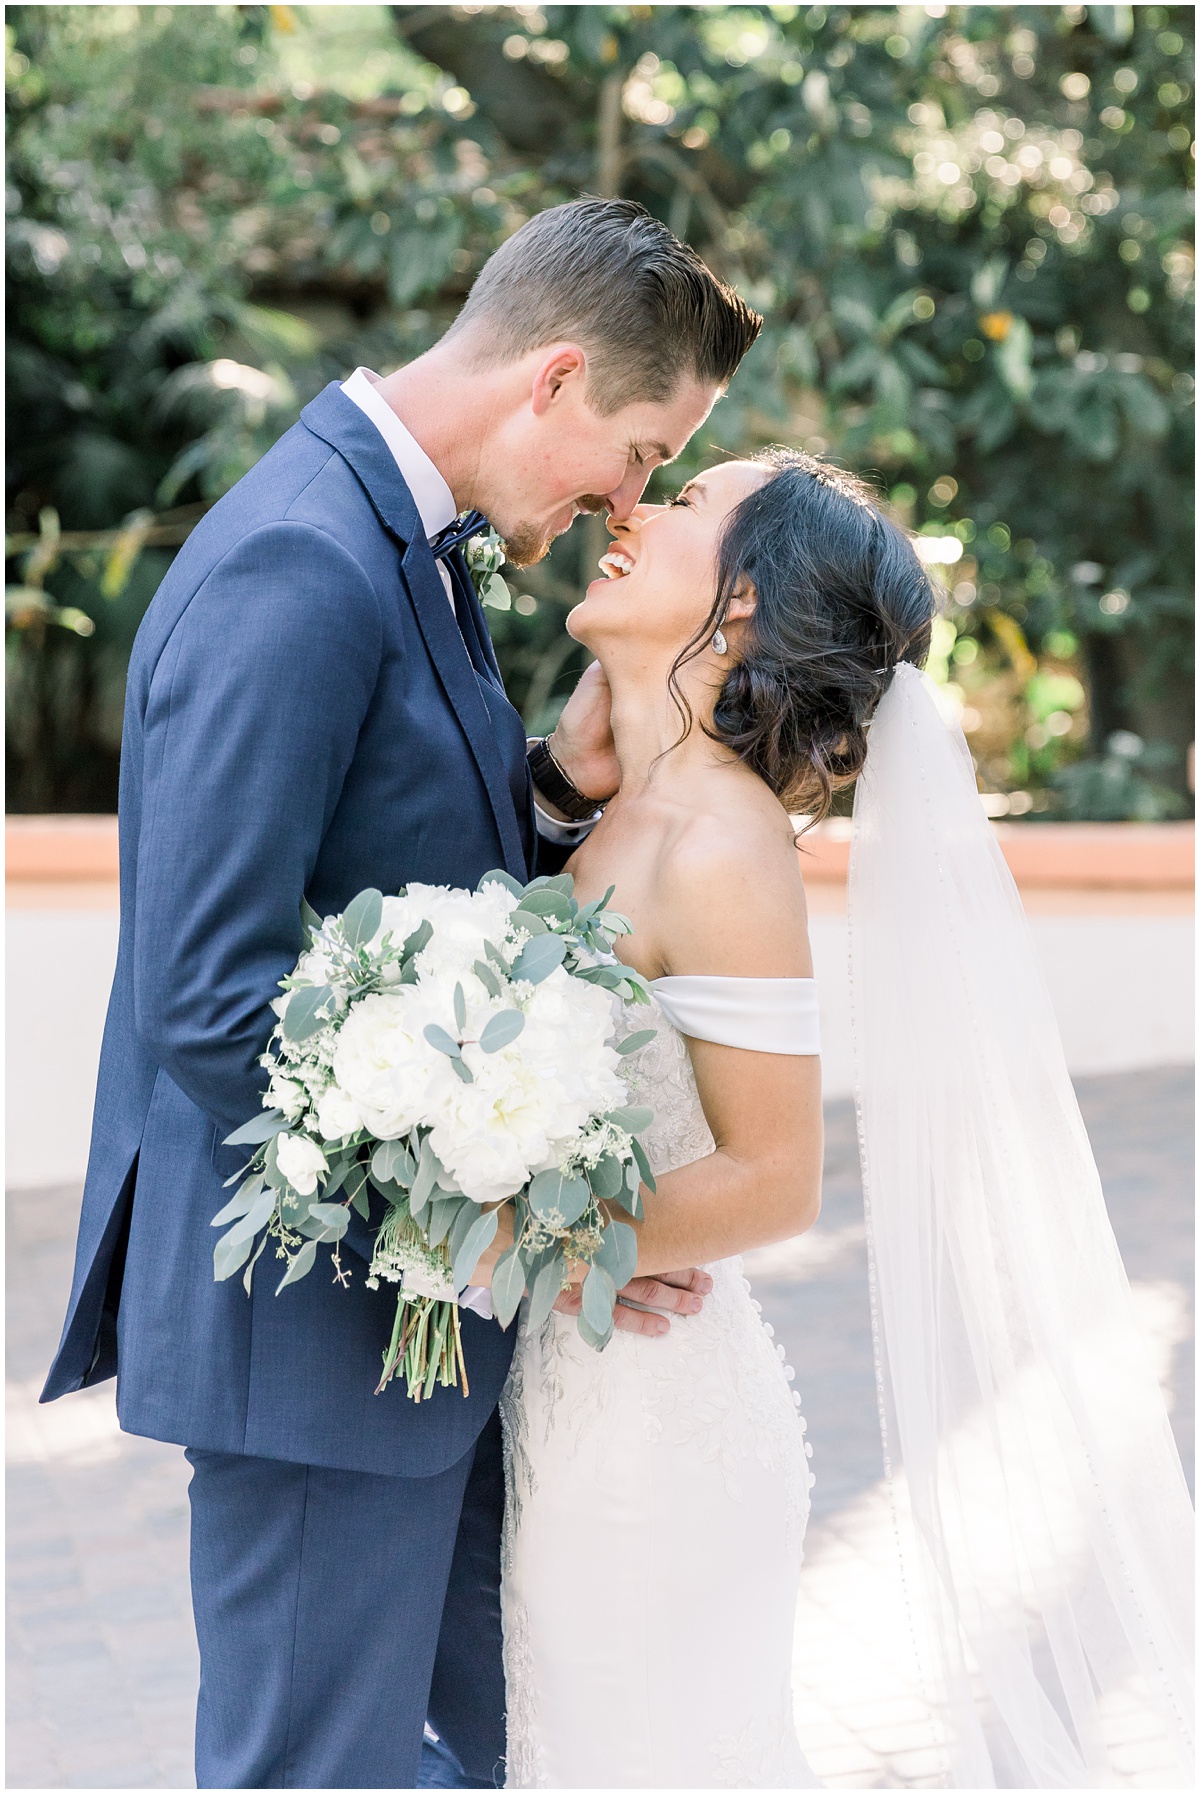 Happy Bride and groom | Rancho Las Lomas Wedding by Peter and Bridgette